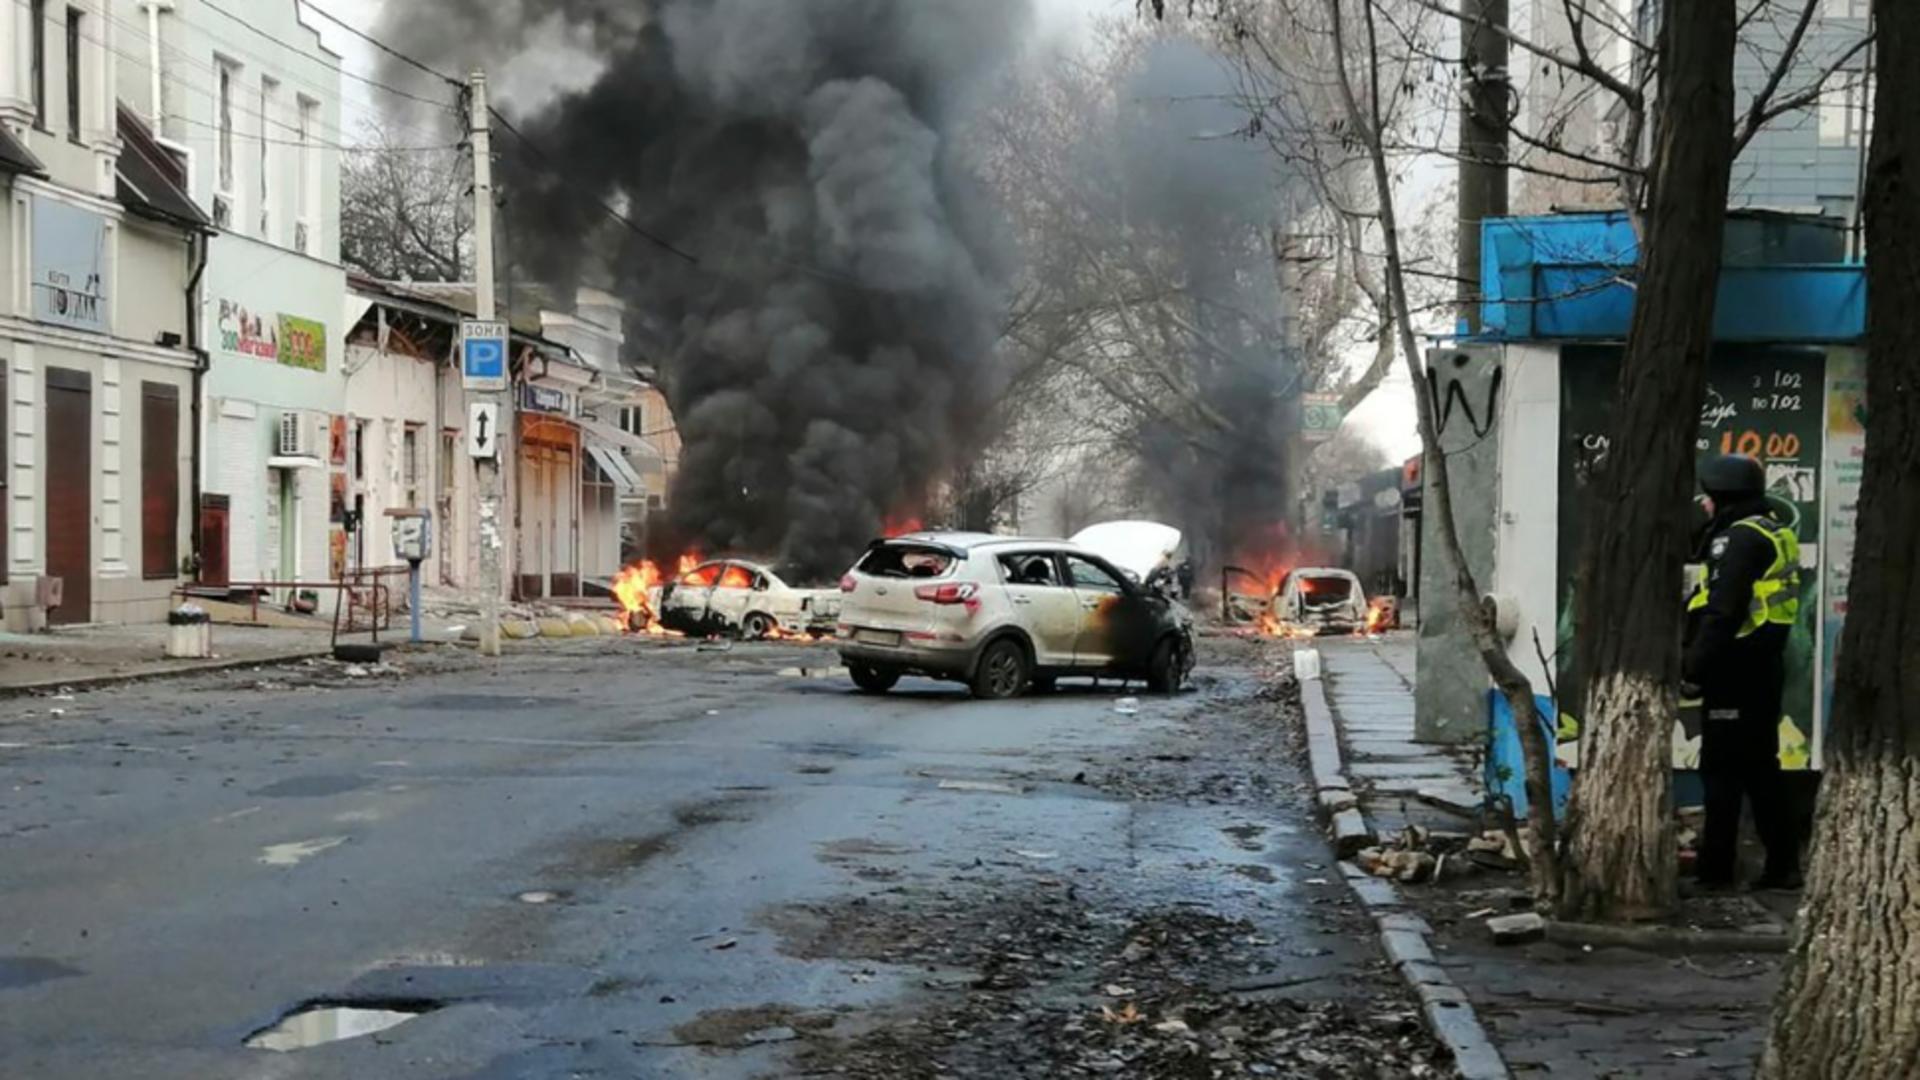 Război în Ucraina, ziua 305 / Foto: Profi Media - AP